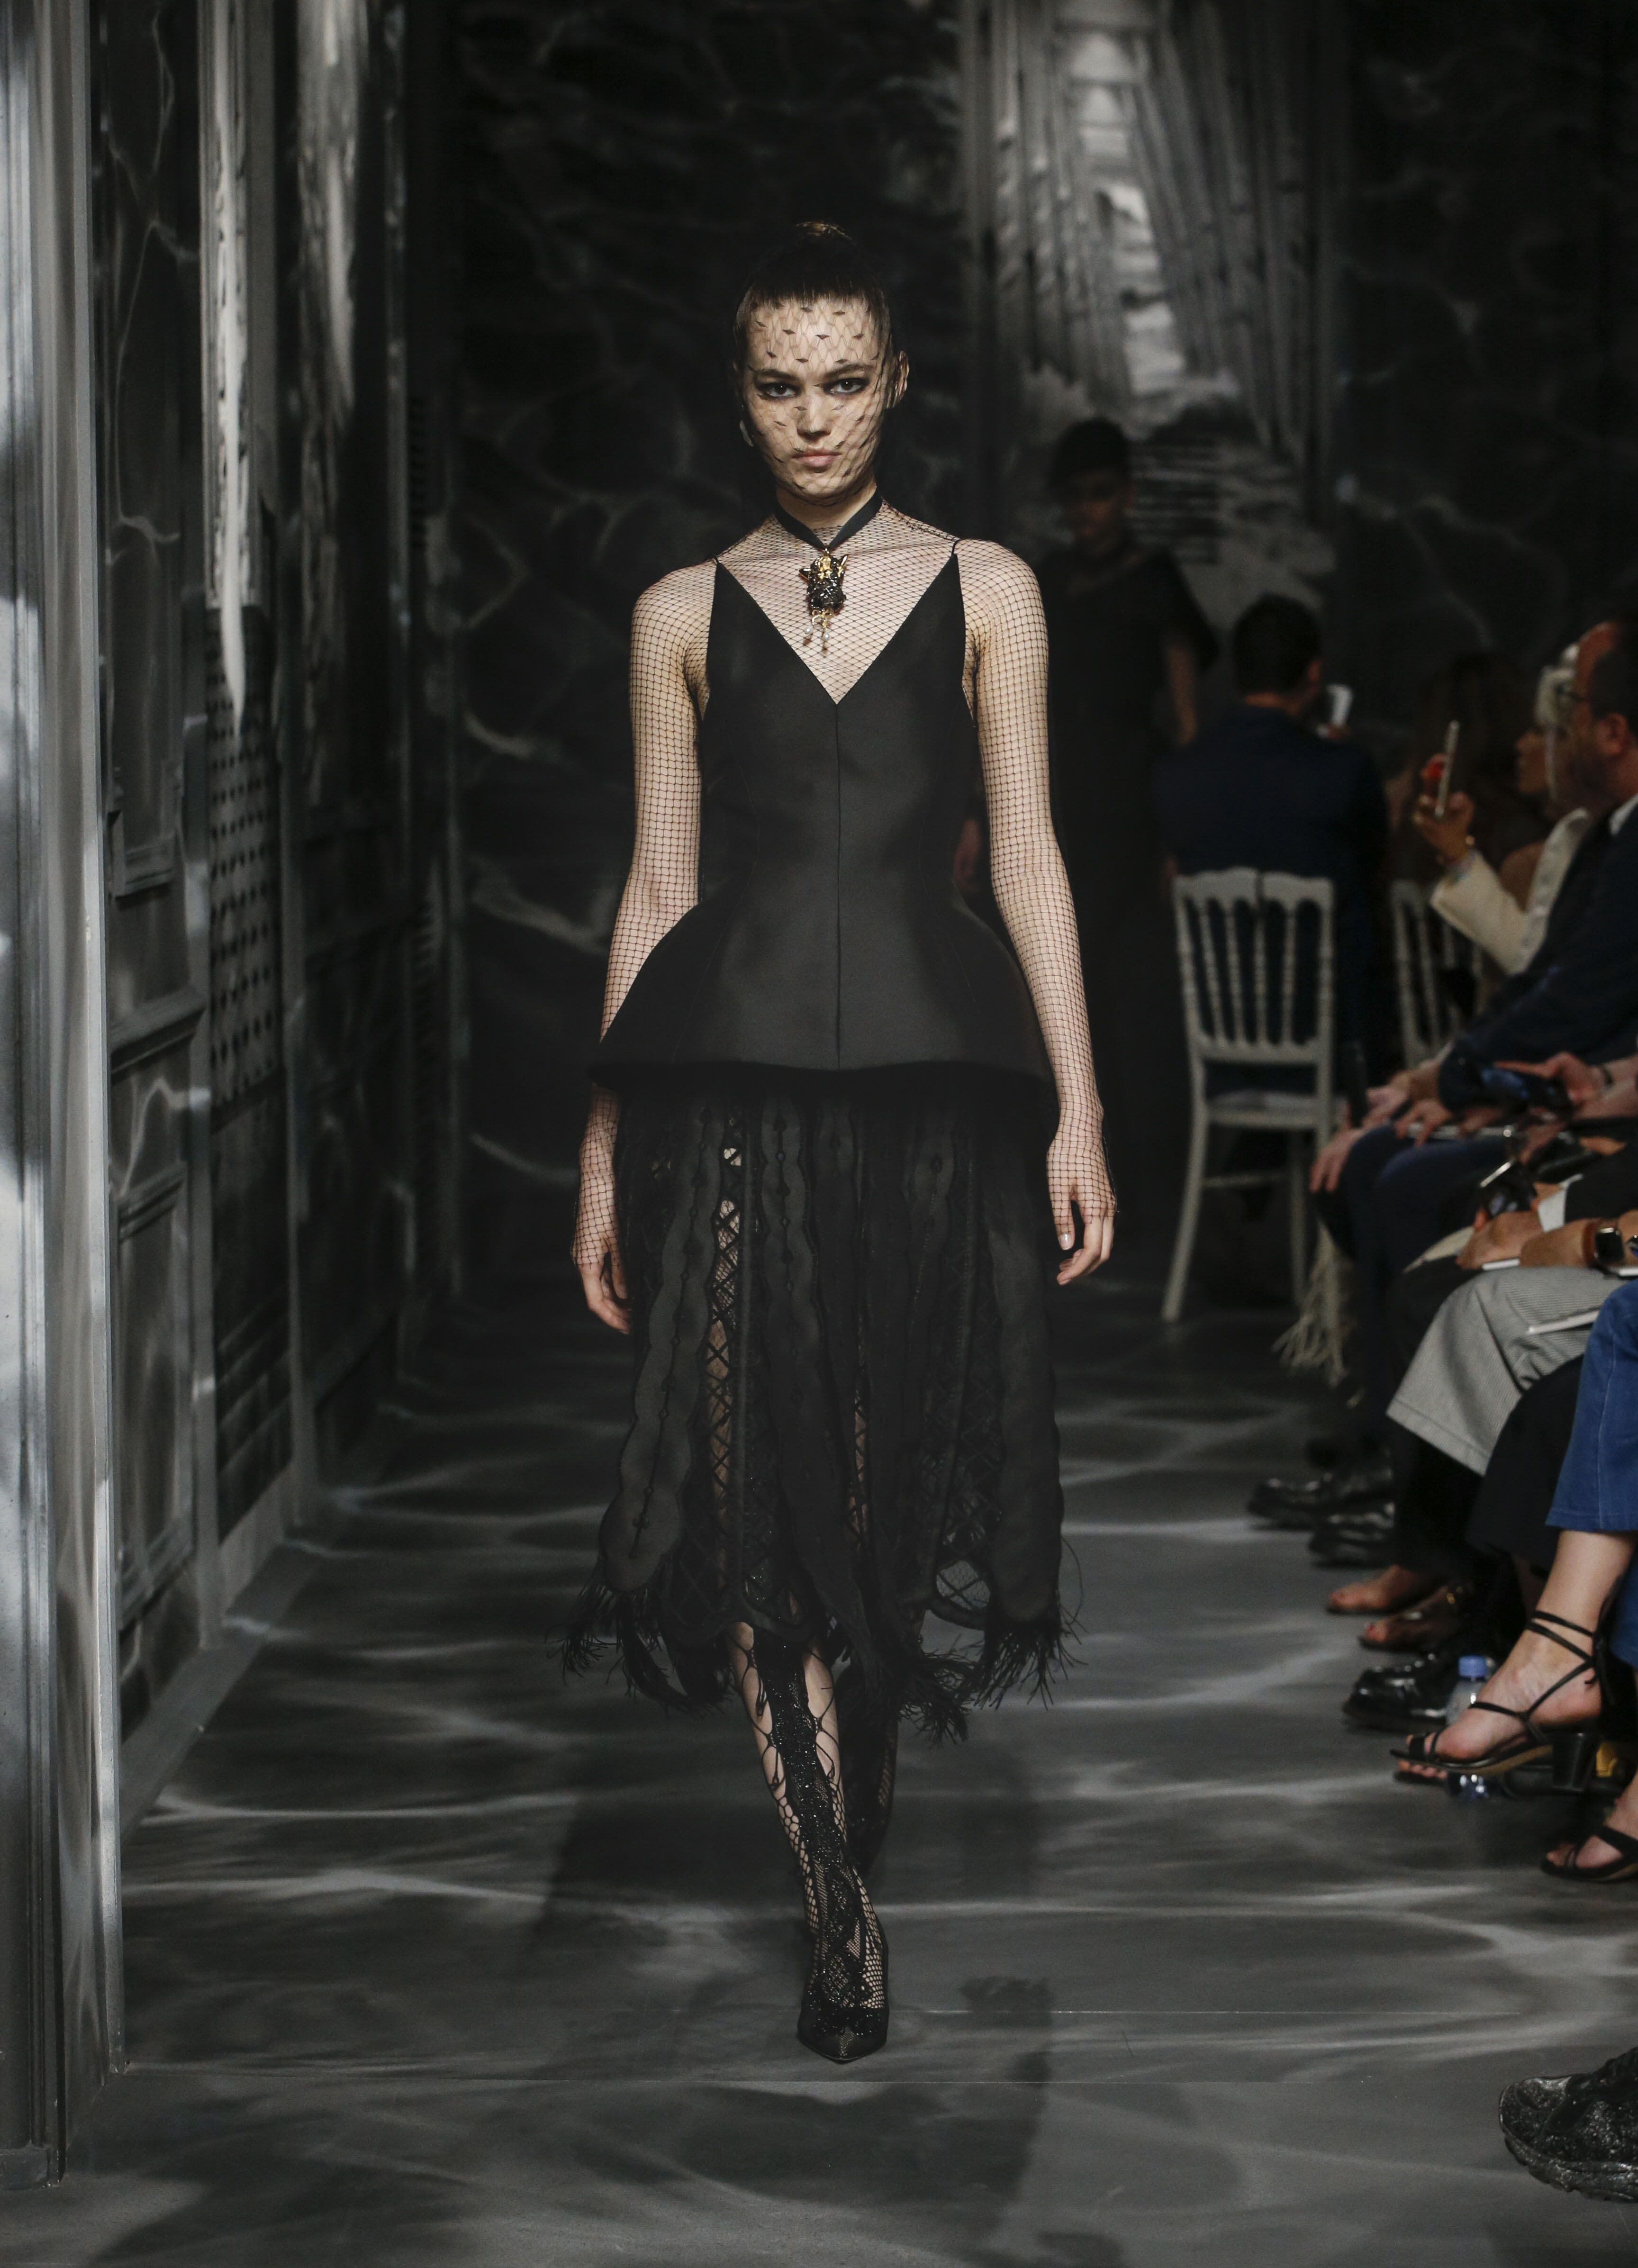 「現代女性毋須畫布，她自身的姿態足矣。」_Dior高訂展暗黑建築剪影10.jpg